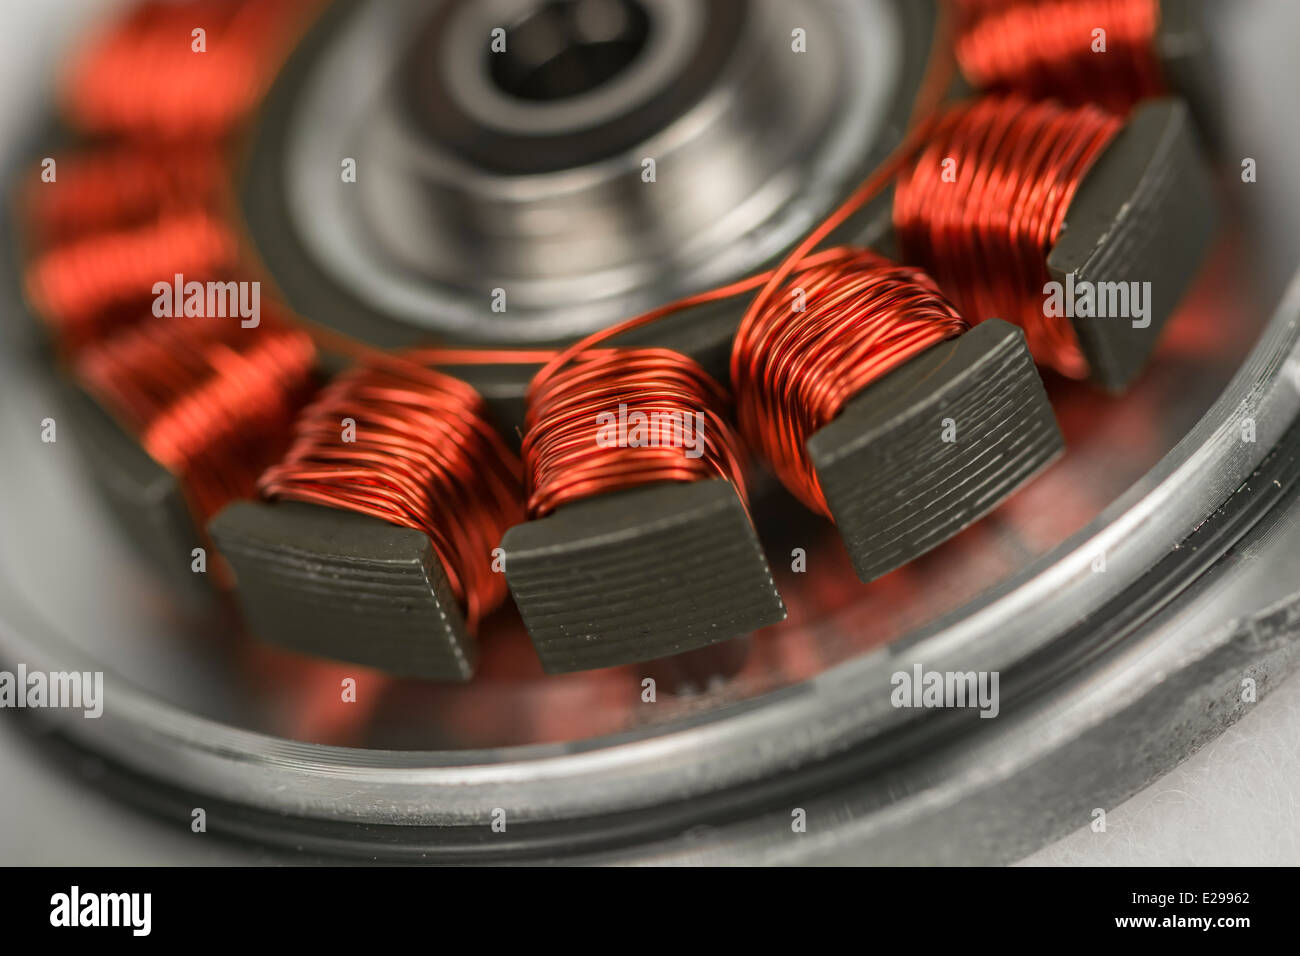 Foto macro di HDD/unità disco rigido motore di mandrino con rame esposto le bobine dello statore. Vedere 'Descrizione' per la messa a fuoco di dettagli. Foto Stock